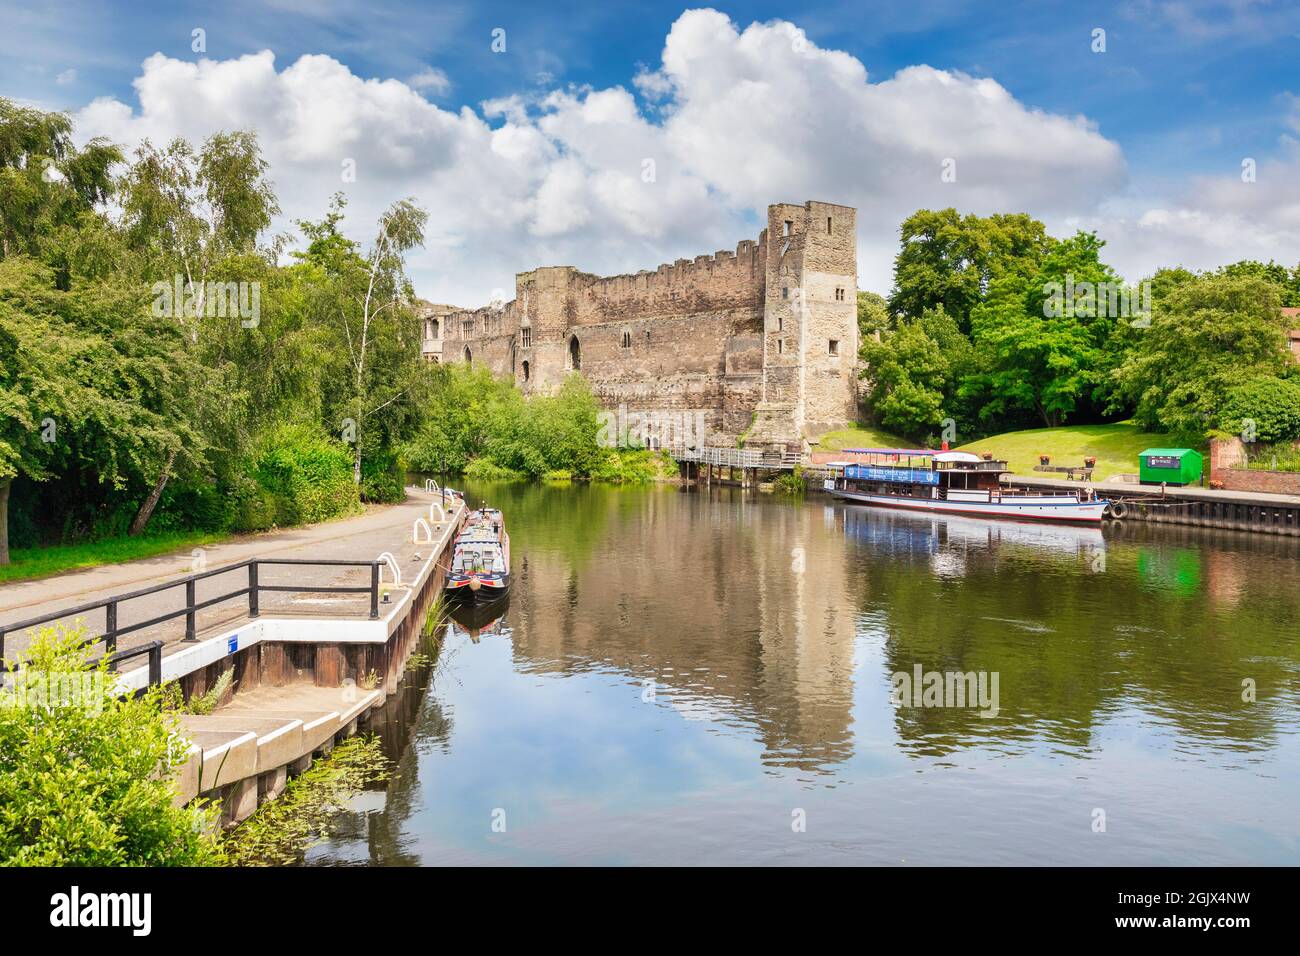 4. Juli 2019: Newark on Trent, Nottinghamshire, Großbritannien - Newark Castle, neben dem Fluss Trent, mit Booten, die am Kai festgemacht sind. Stockfoto